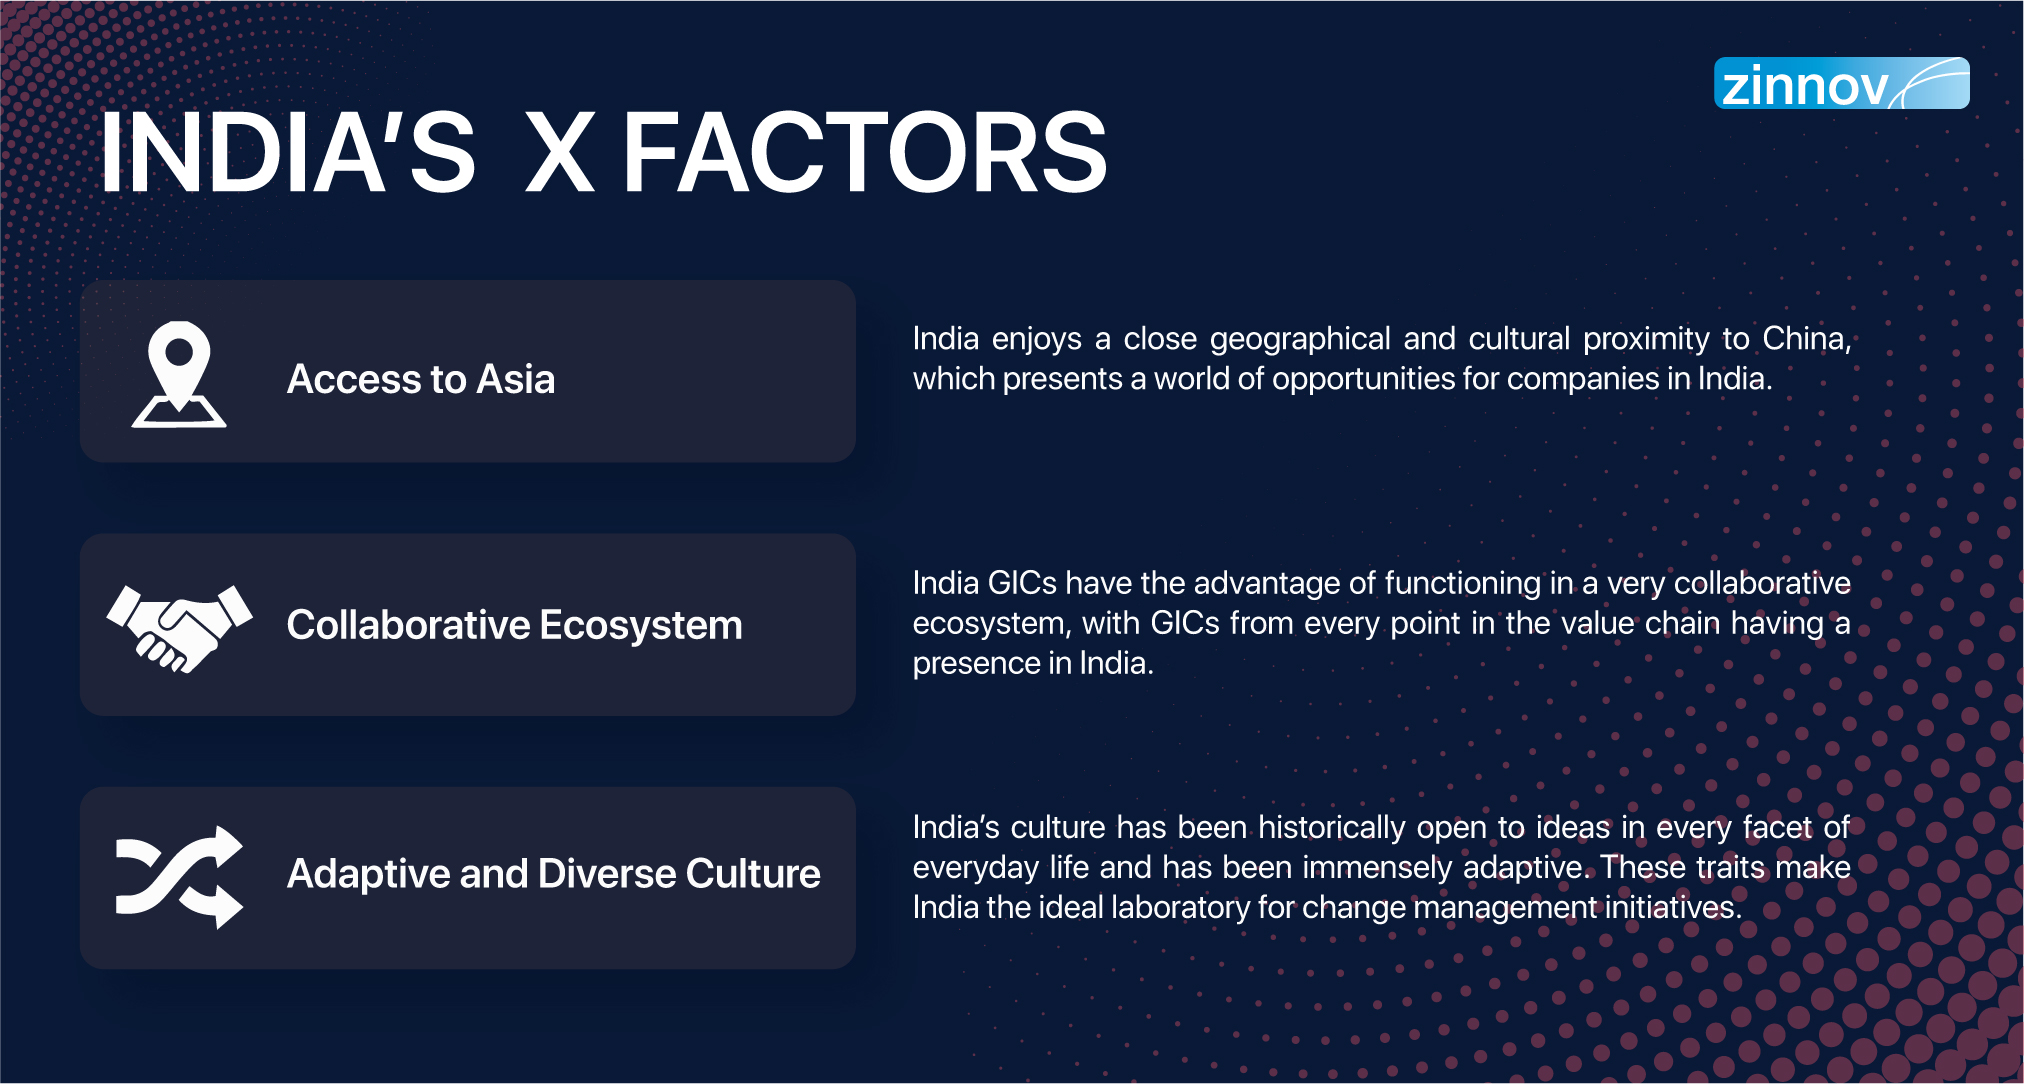 India's X factors